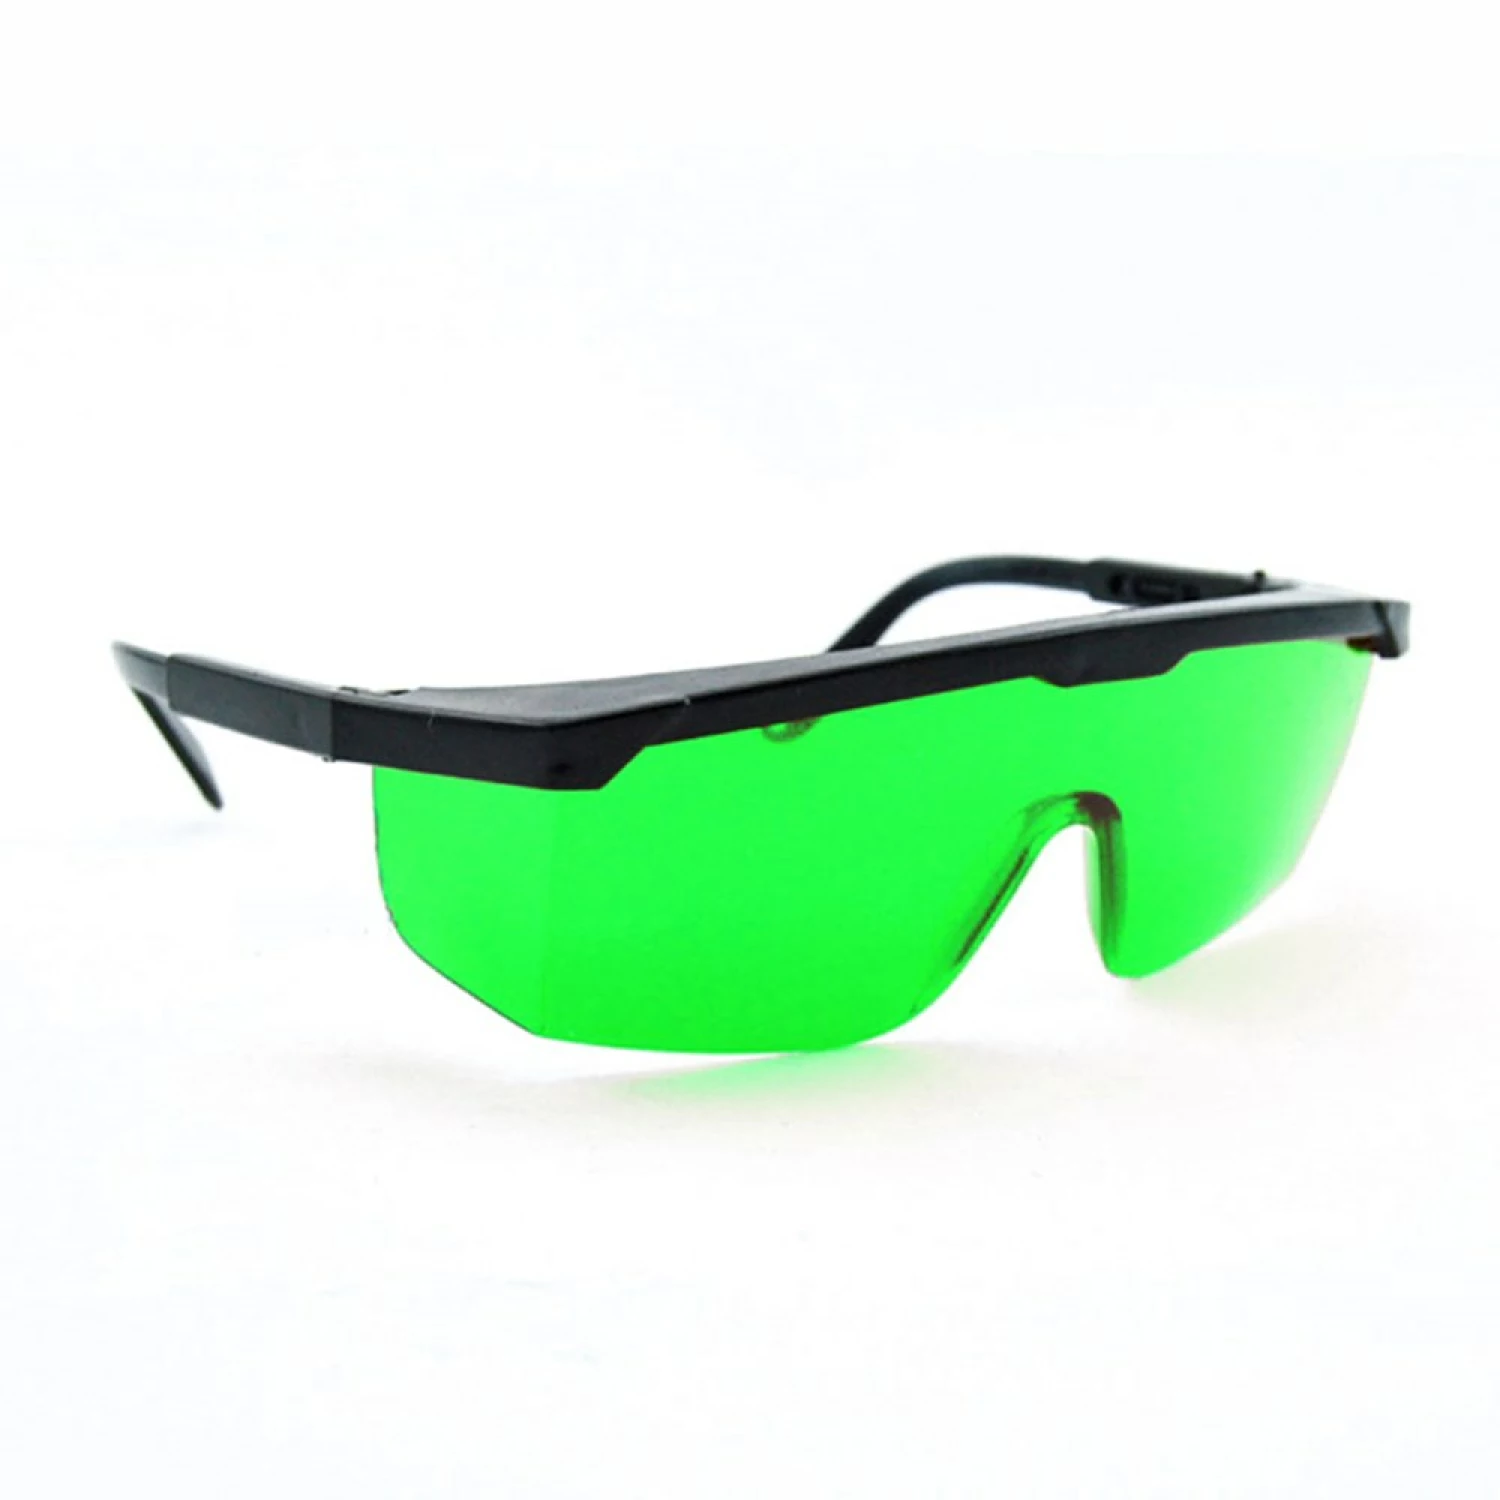 Levelfix Laserbril groen-image